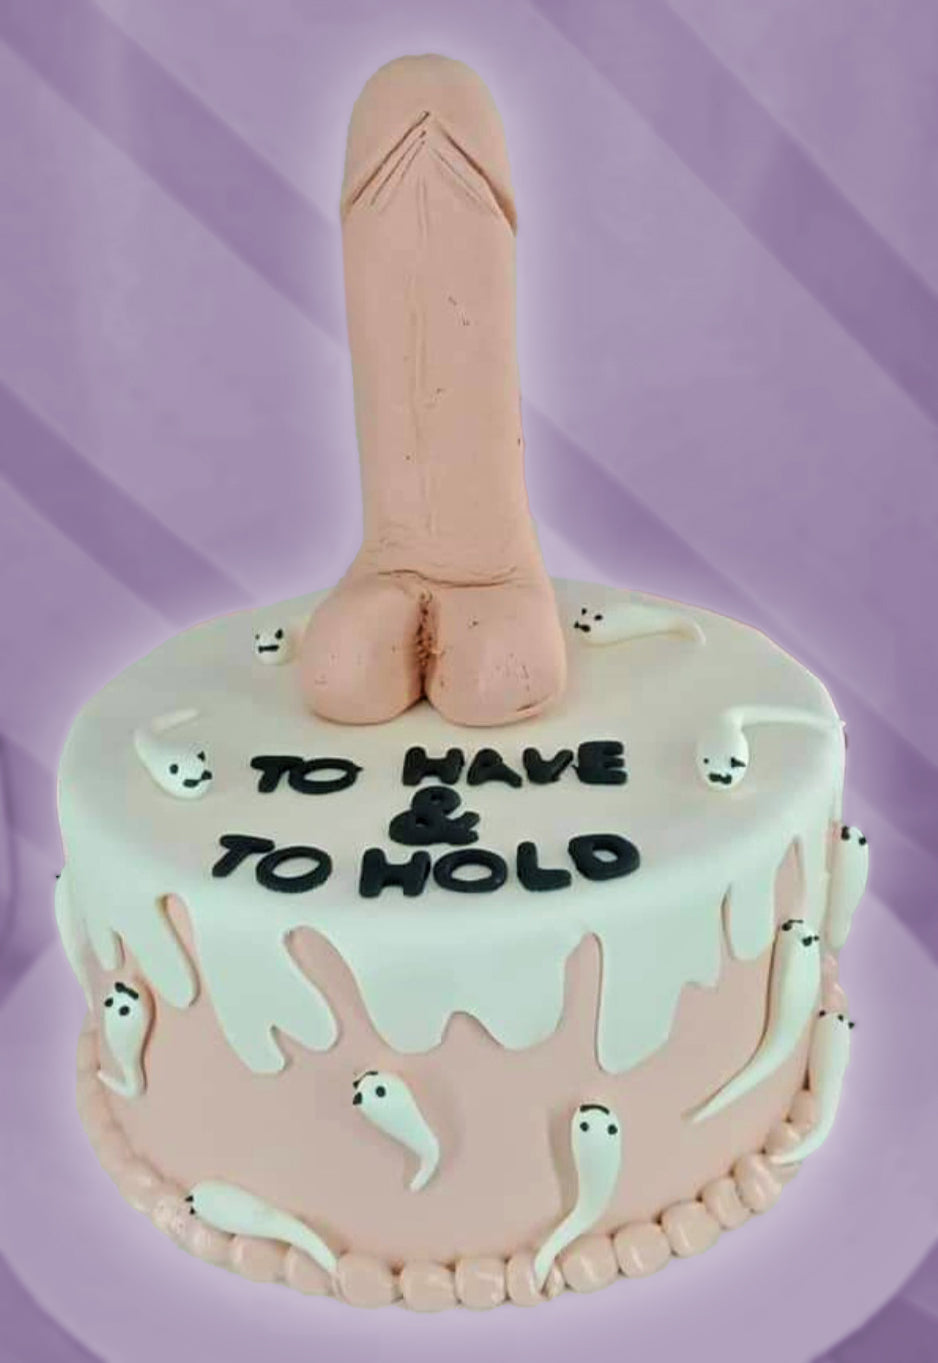 Naughty Cake with sperm swim party